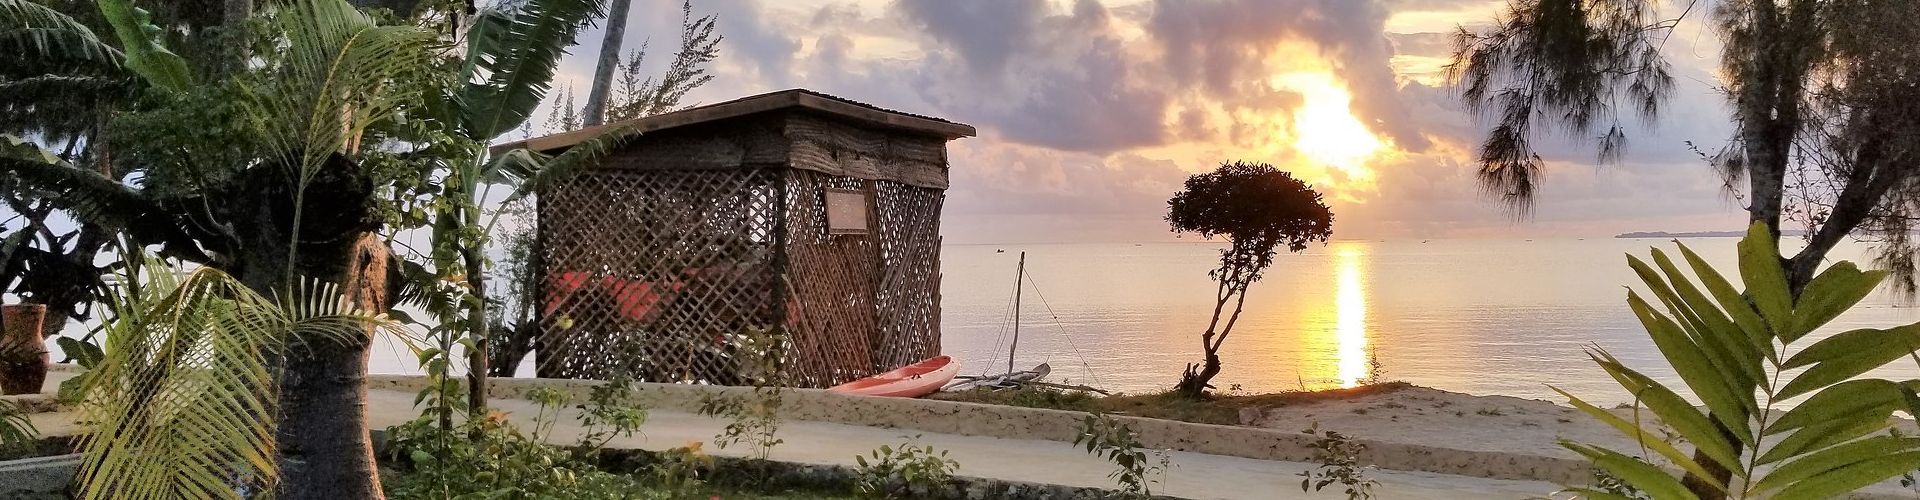 Genießen Sie ein paar ruhige Tage auf dem zauberhaften Sansibar Archipel